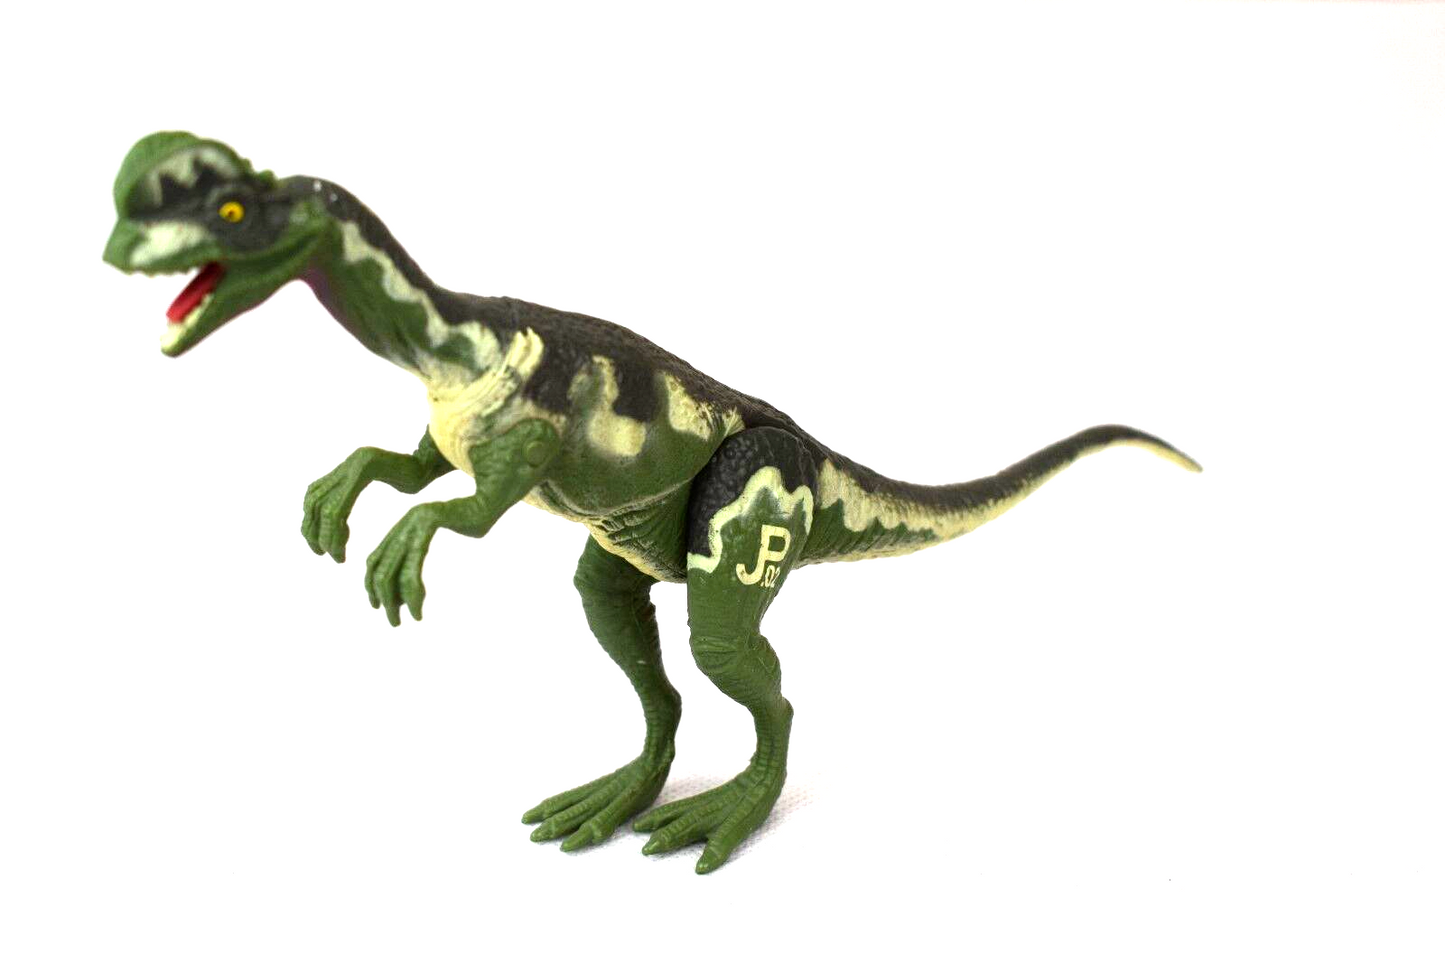 Jurassic Park Dilophosaurus dinosaur